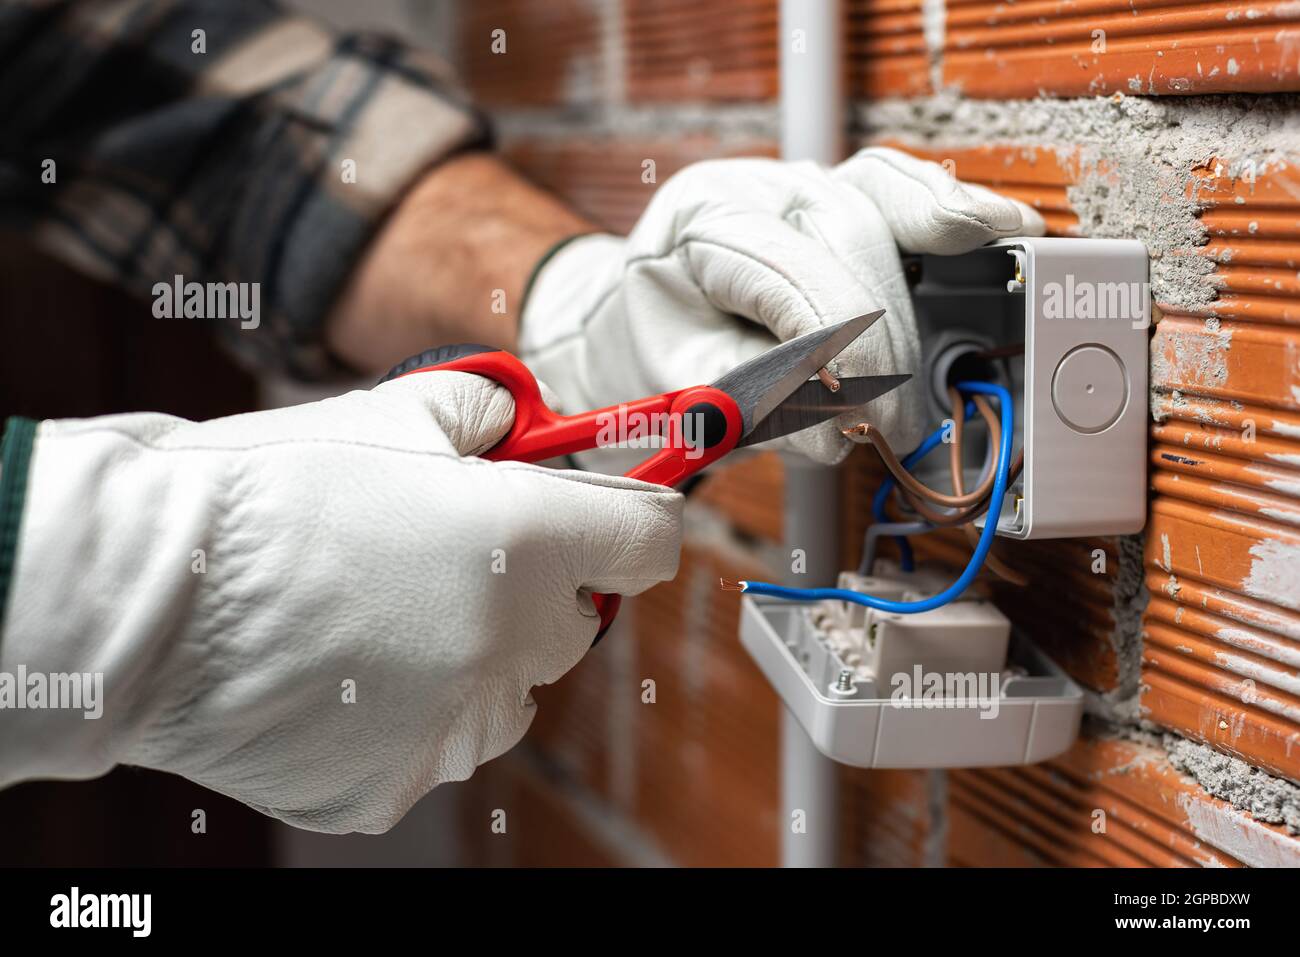 Der Elektriker Arbeiter bei der Arbeit mit der Schere bereitet die elektrischen Kabel des häuslichen elektrischen Systems vor. Bauindustrie. Stockfoto